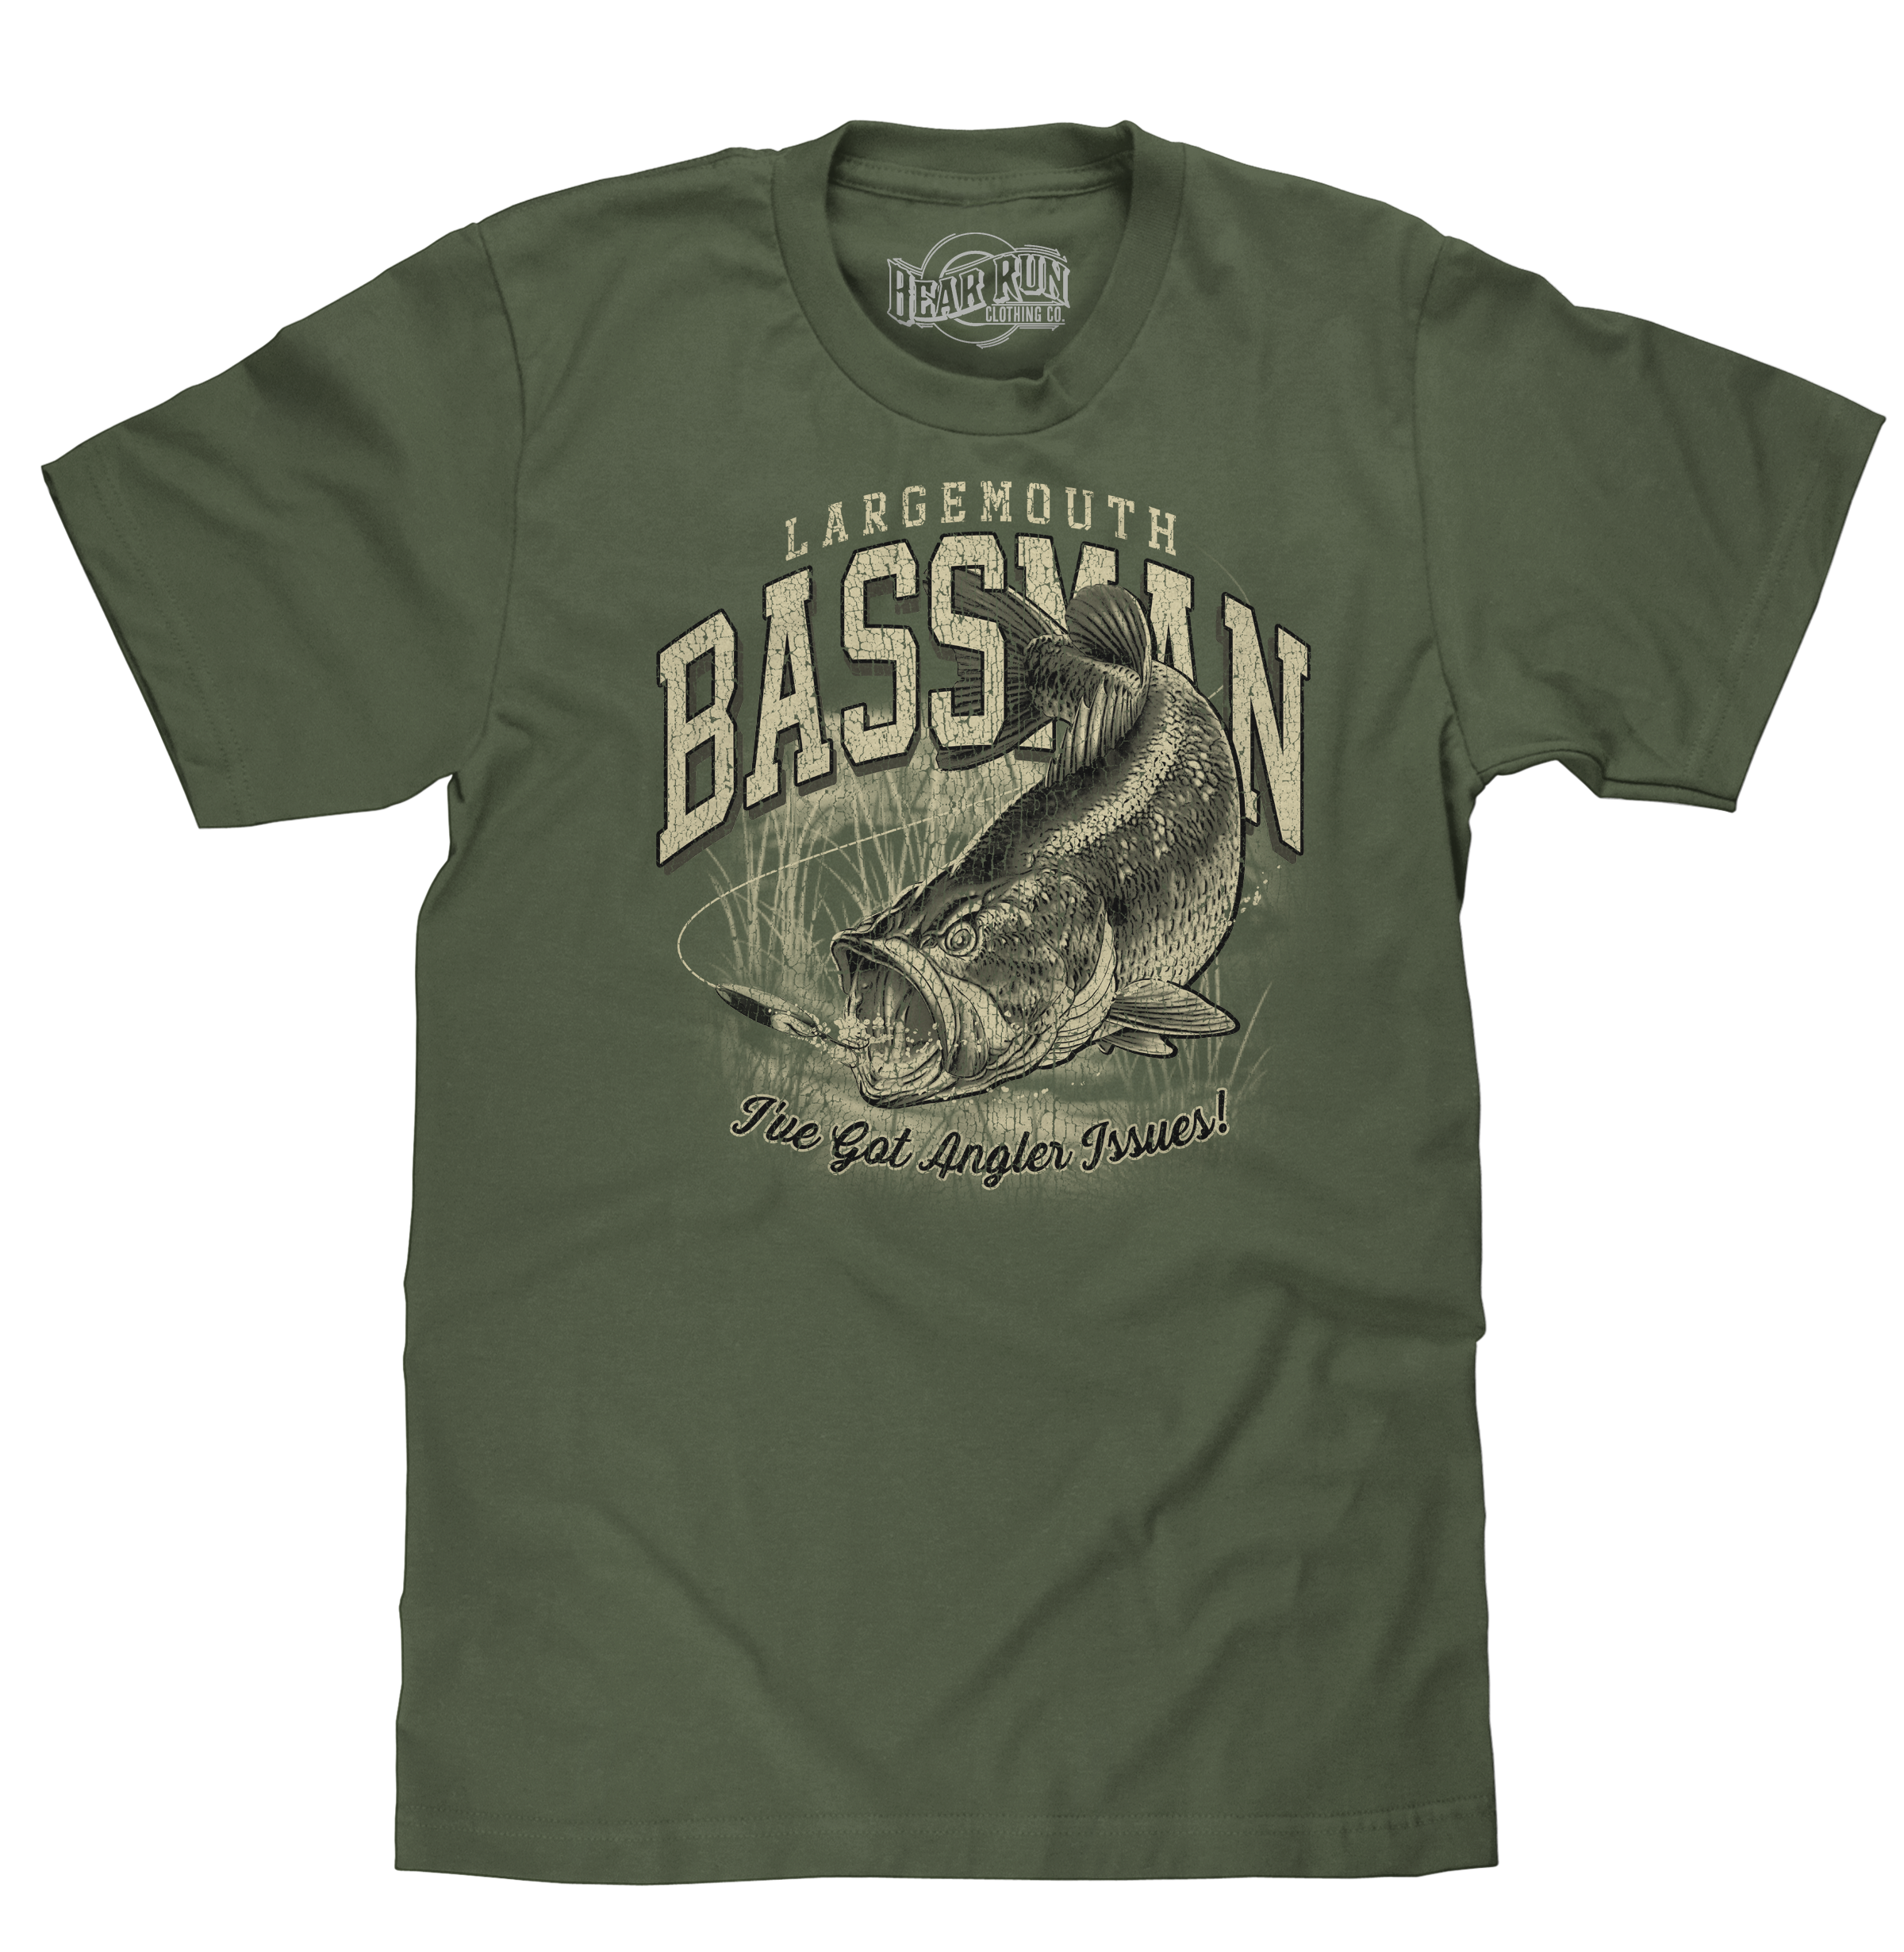 Largemouth Bassman Angler Issues T-Shirt - Moss Green – Bear Run